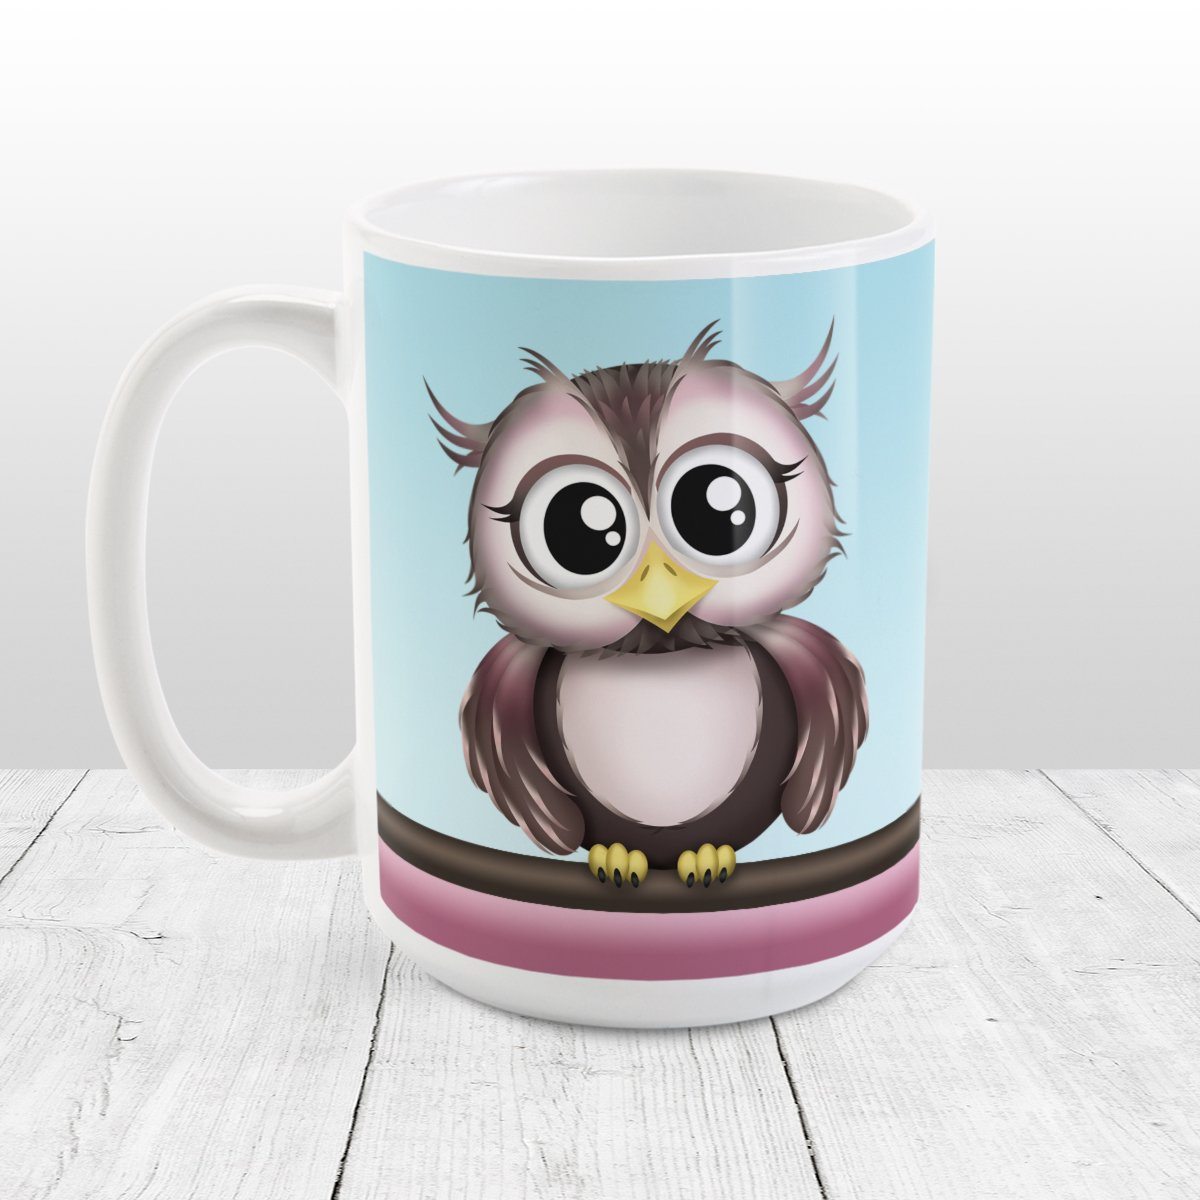 Adorable Pink and Brown Owl Mug at Amys' Coffee Mugs